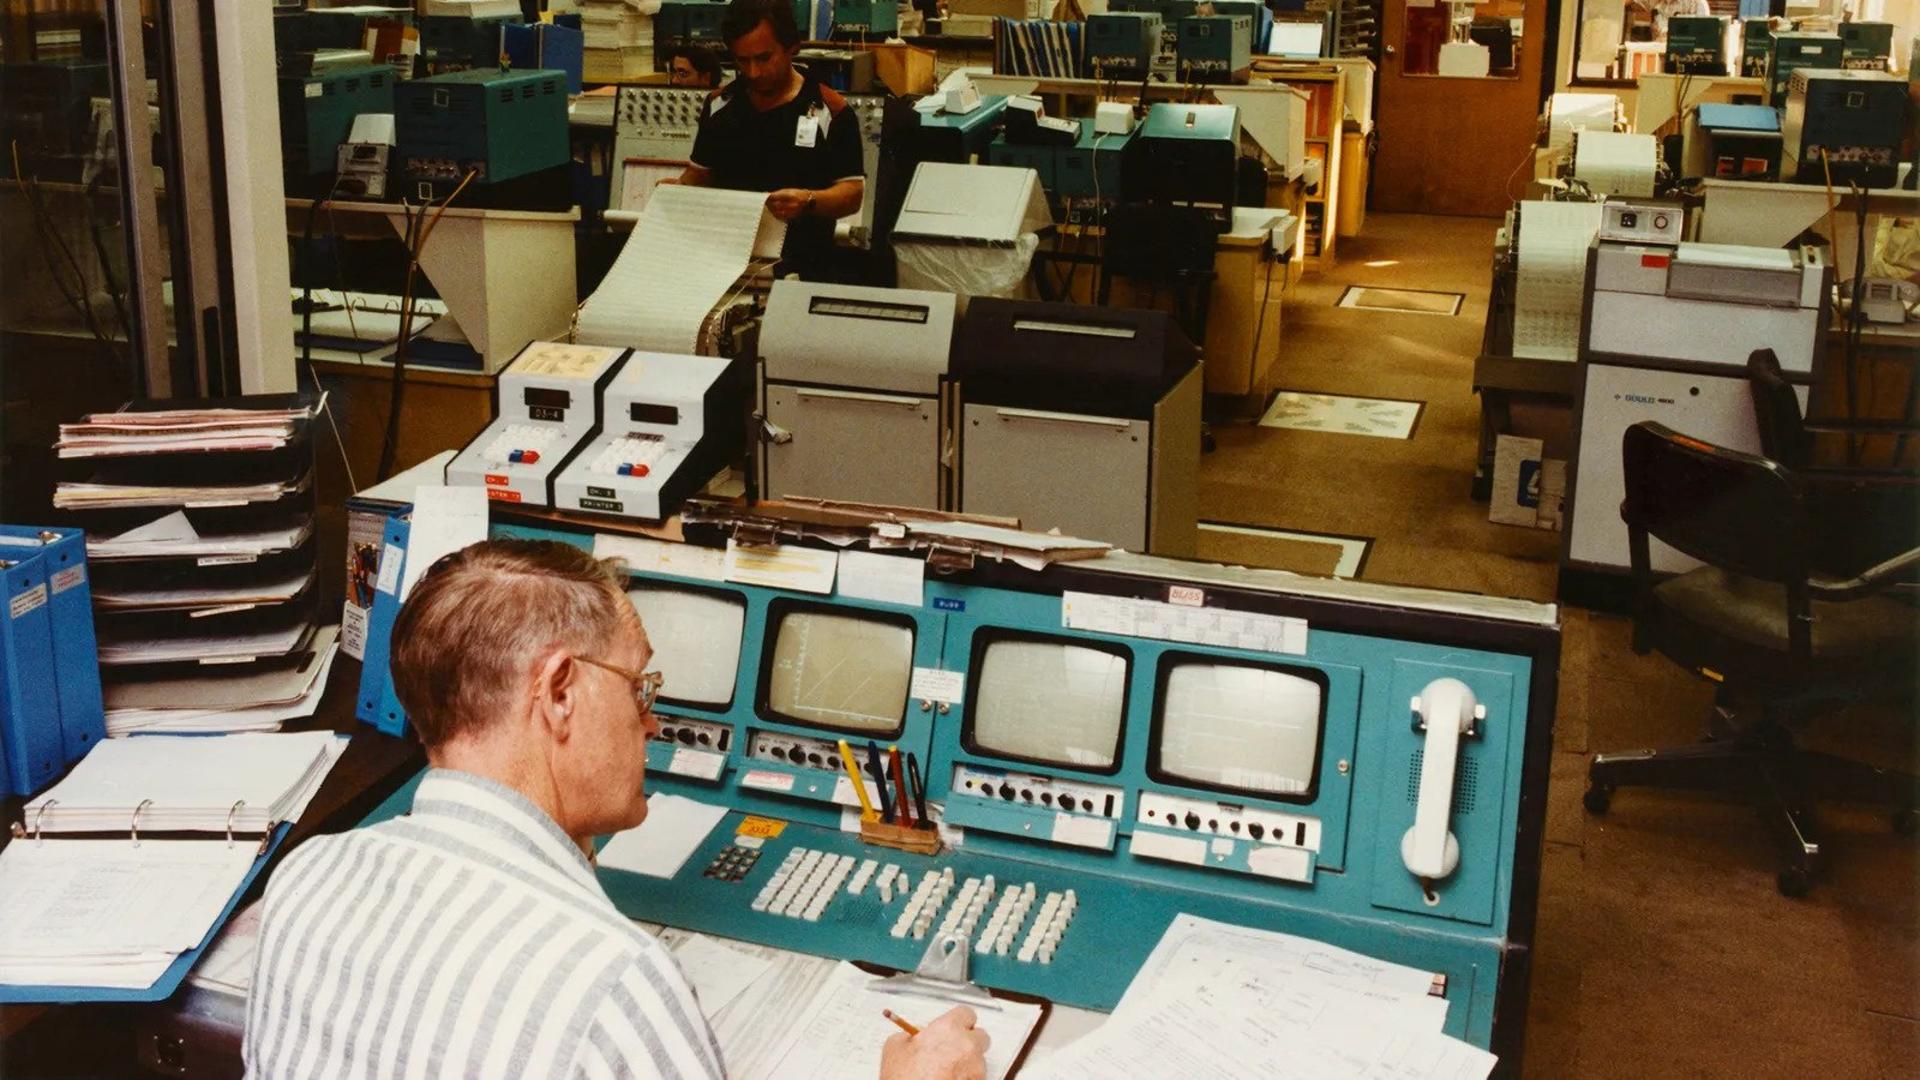 مردی در حال کار با کامپیوترهای قدیمی